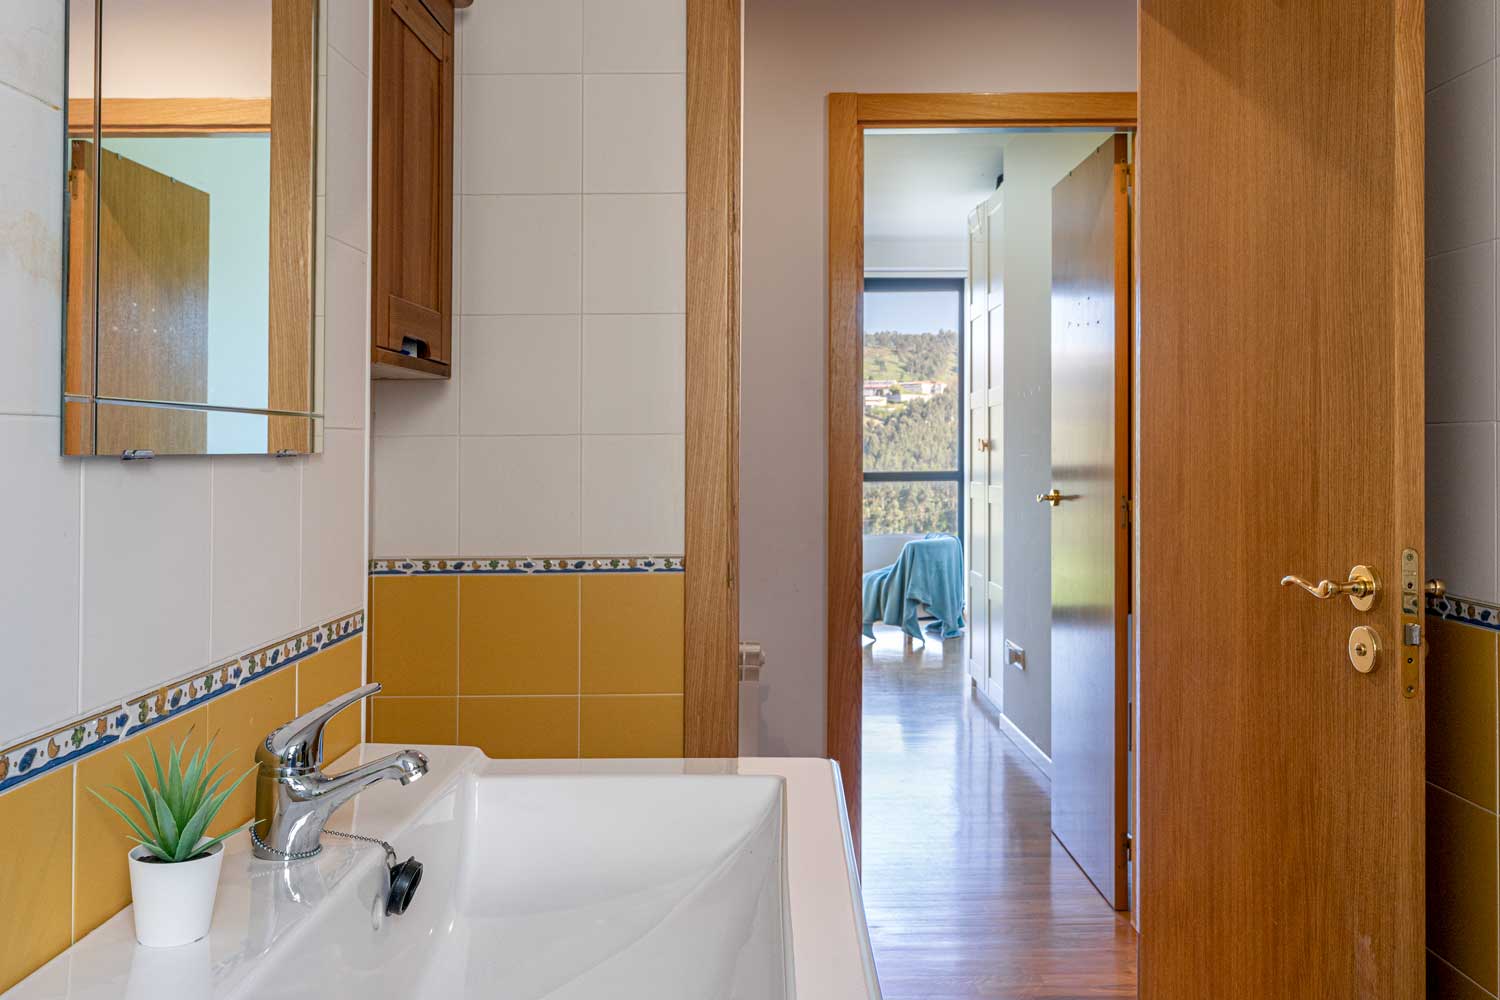 Cuarto de baño blanco y amarillo sencillo y conexión con dormitorio